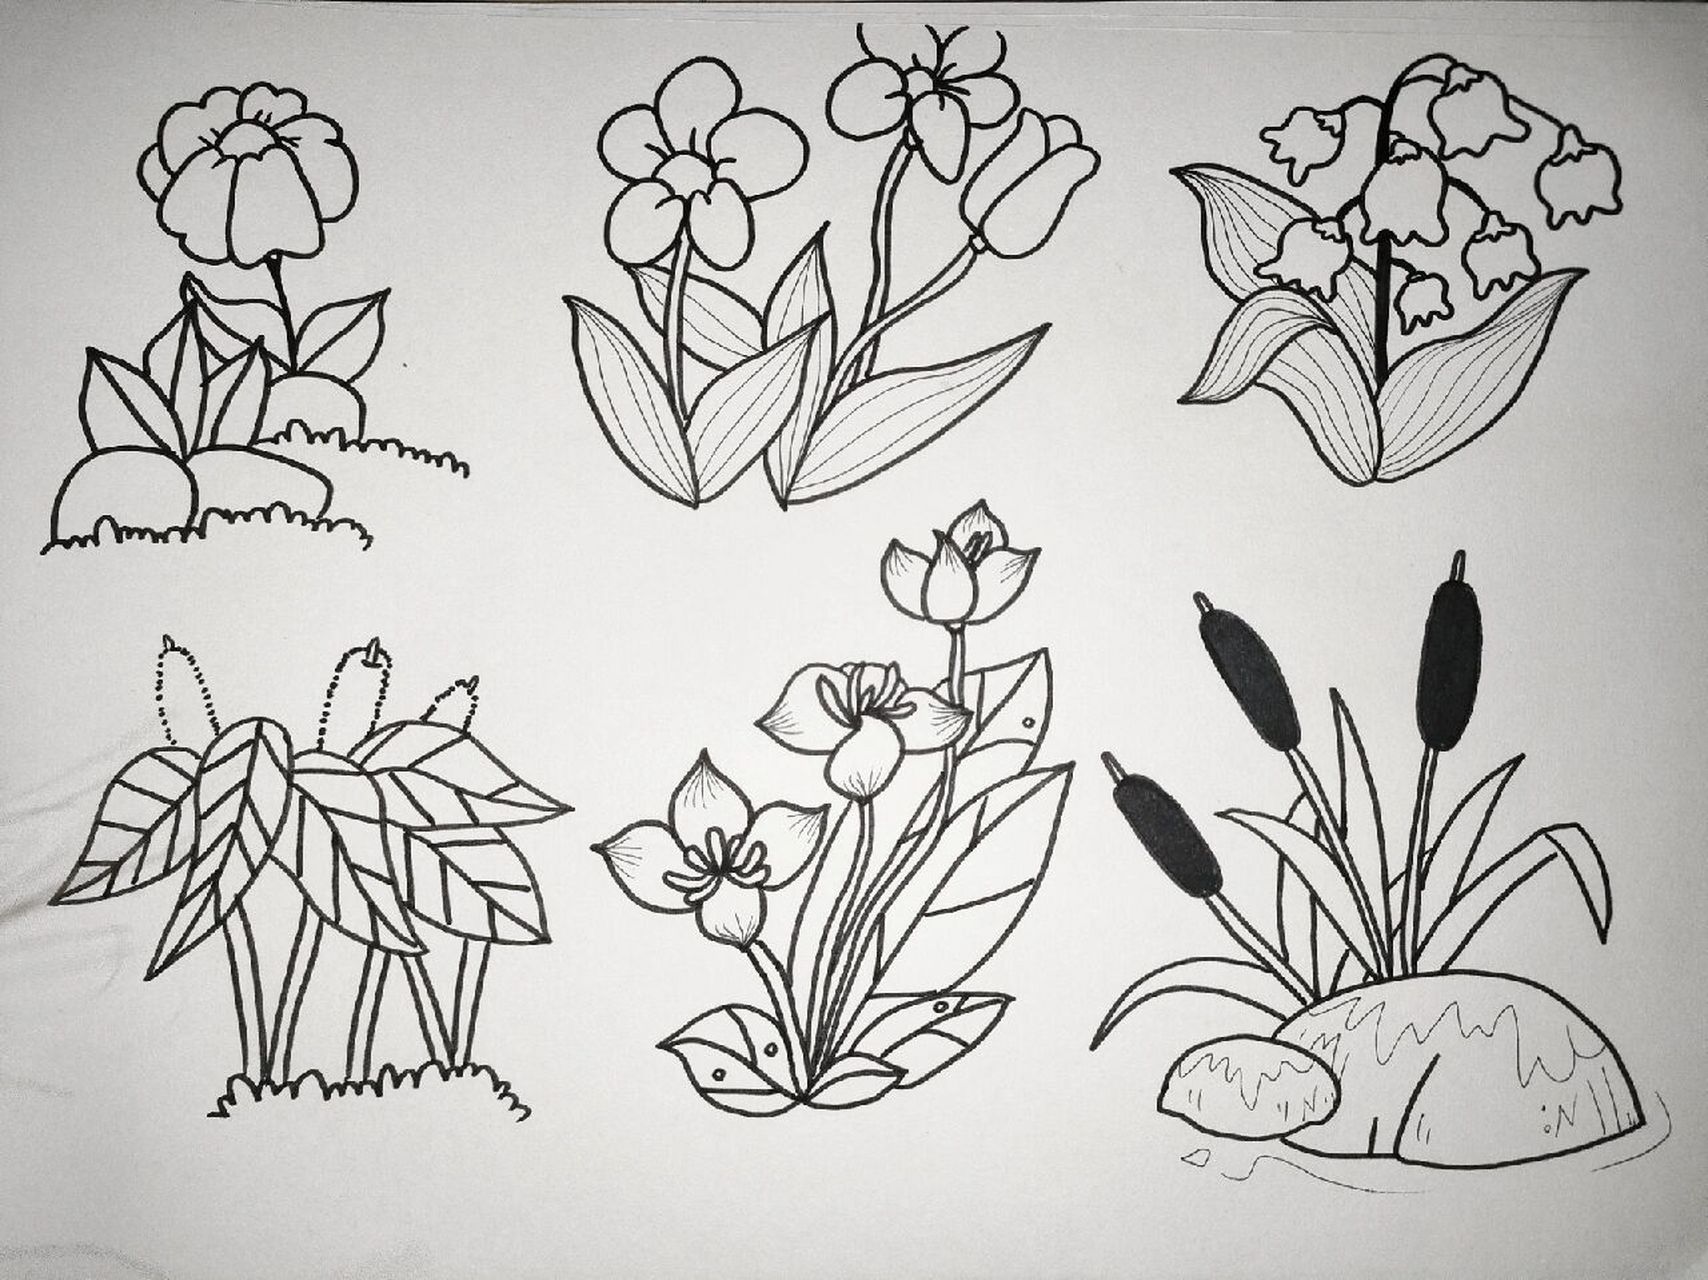 简笔画组合简单 植物图片